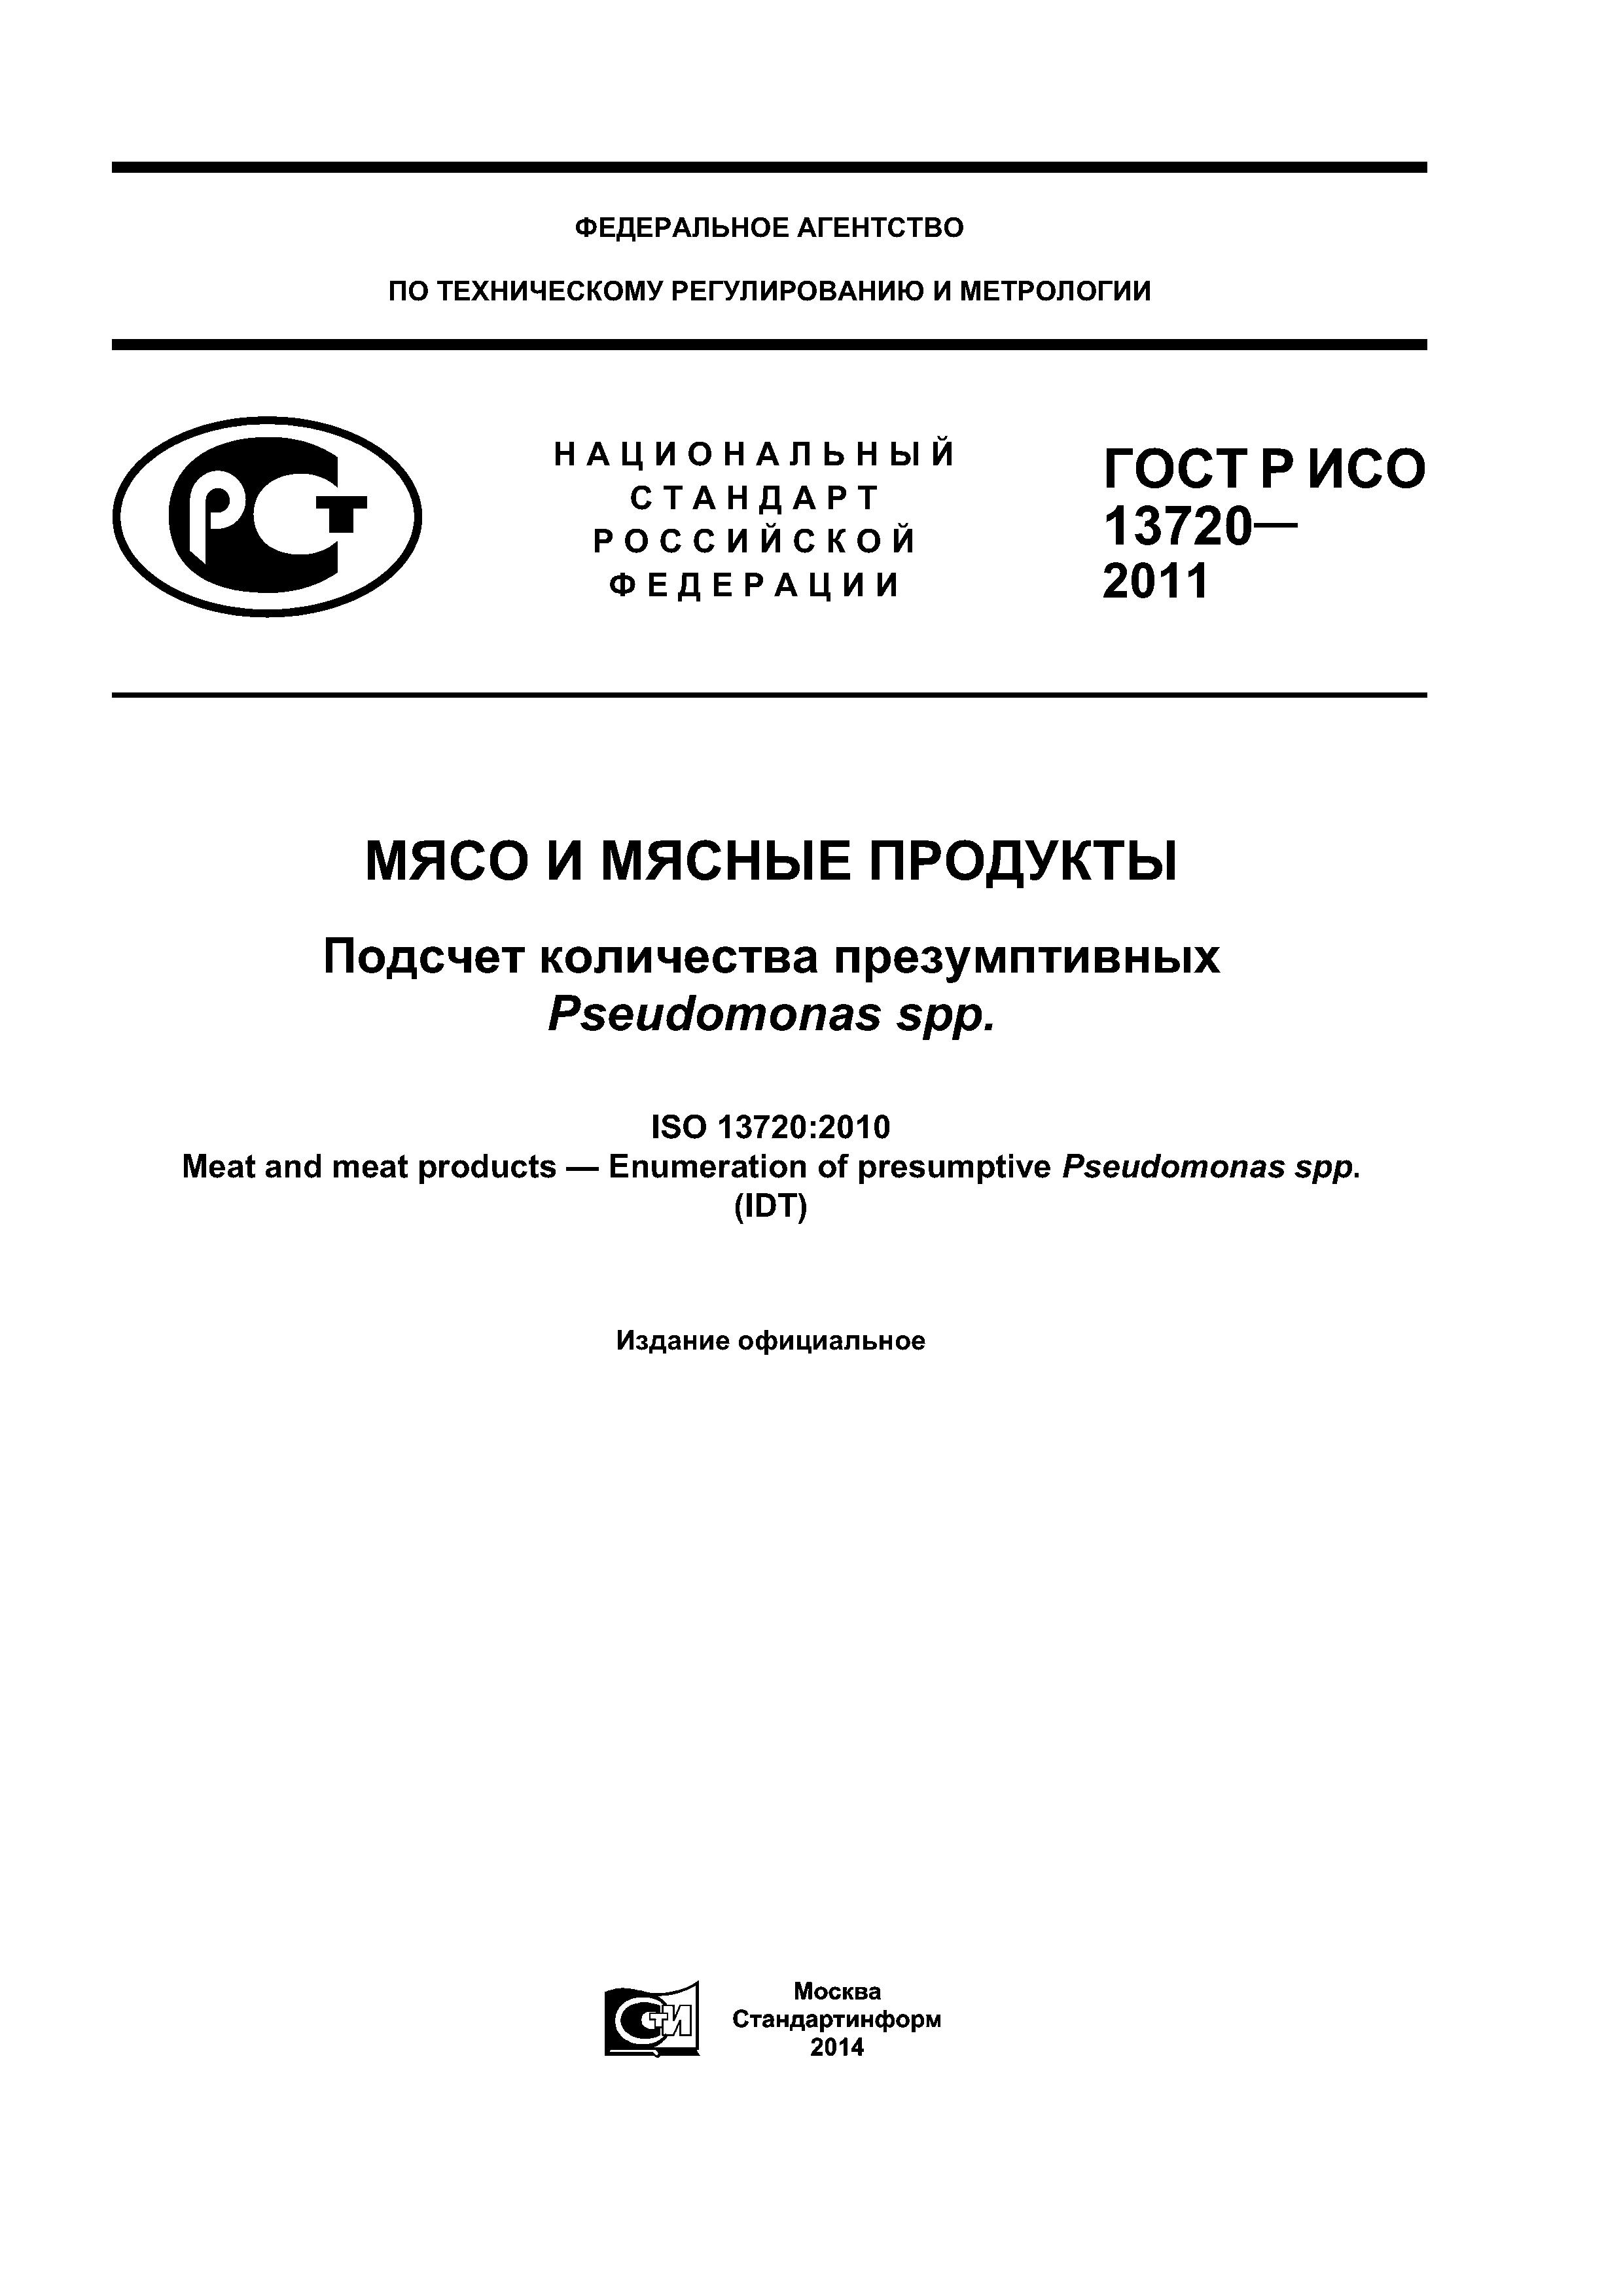 ГОСТ Р ИСО 13720-2011